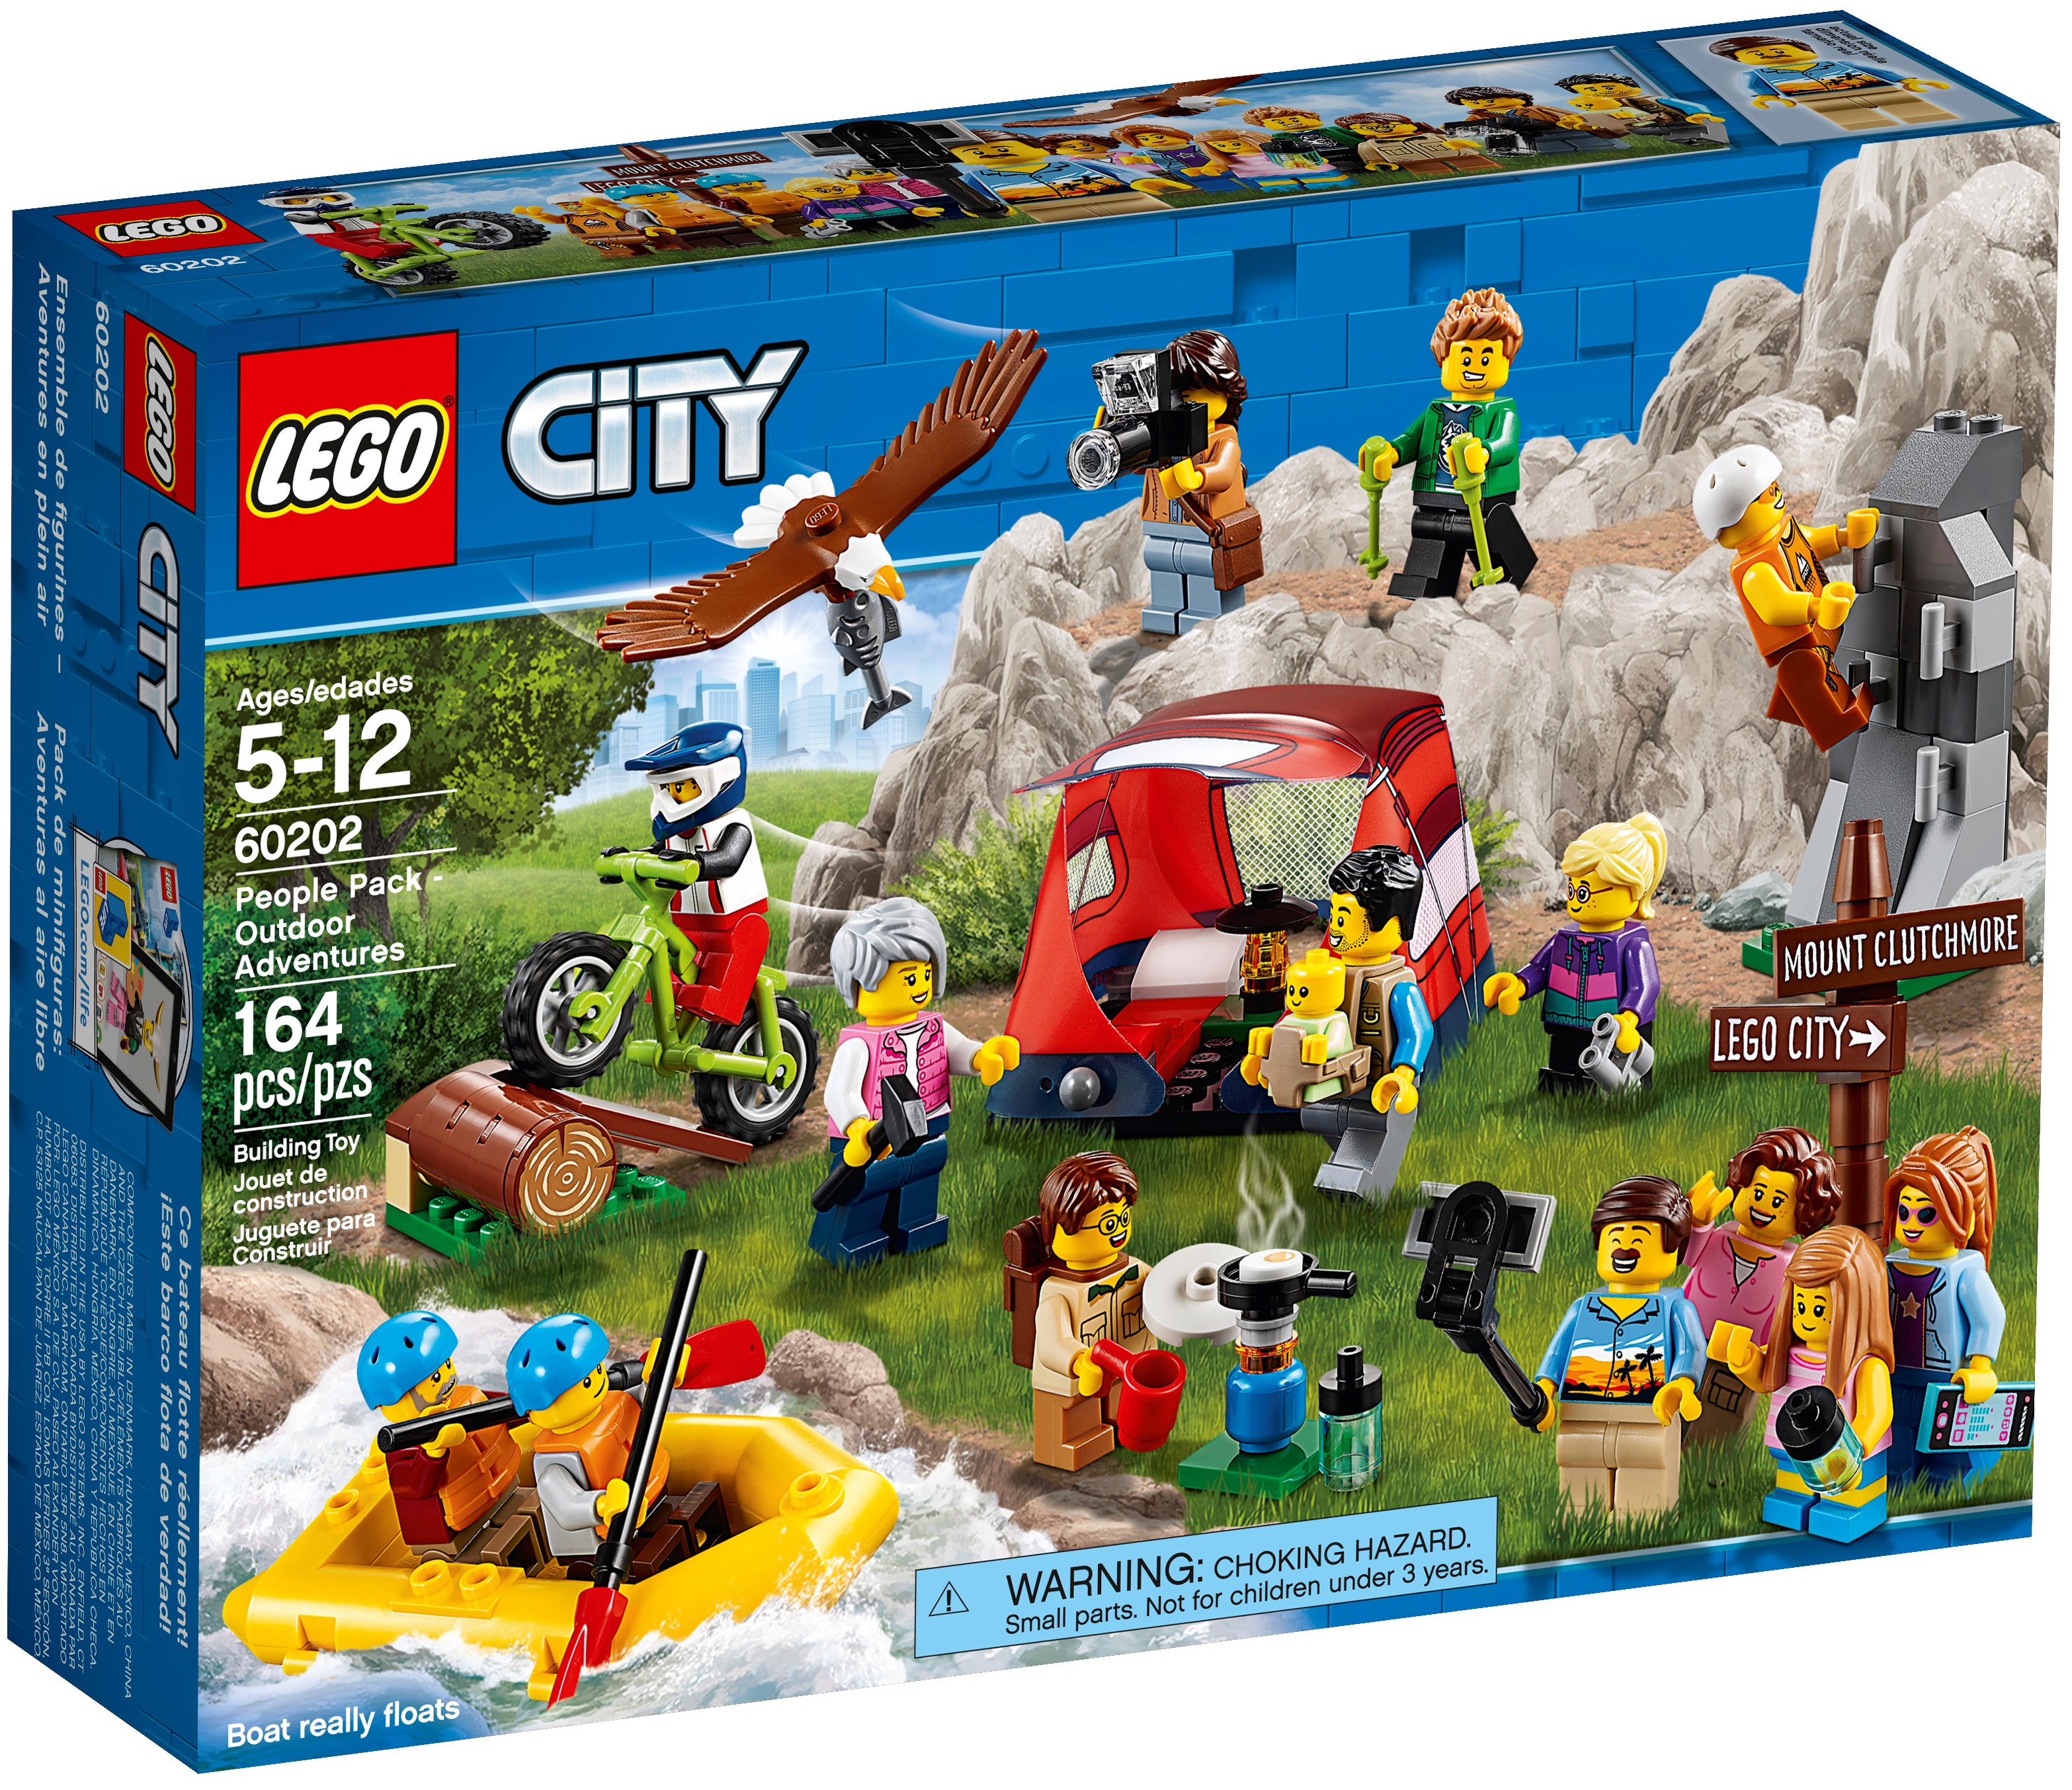 de minifiguras: Aventuras al aire libre 60202 City Oficial LEGO® ES